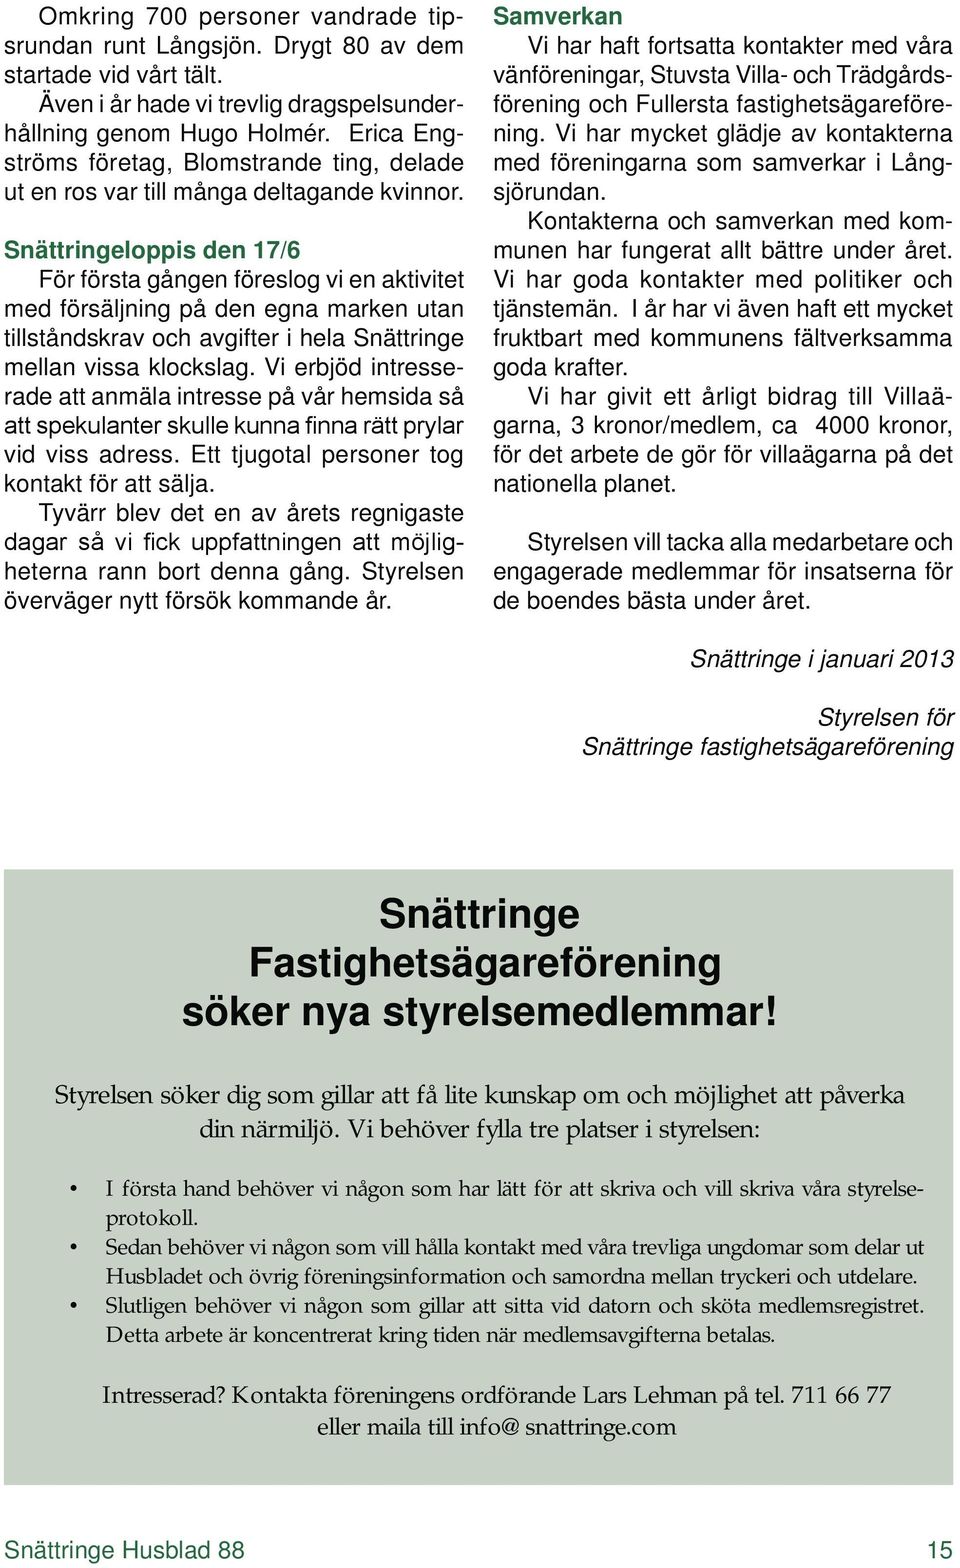 Snättringeloppis den 17/6 För första gången föreslog vi en aktivitet med försäljning på den egna marken utan tillståndskrav och avgifter i hela Snättringe mellan vissa klockslag.